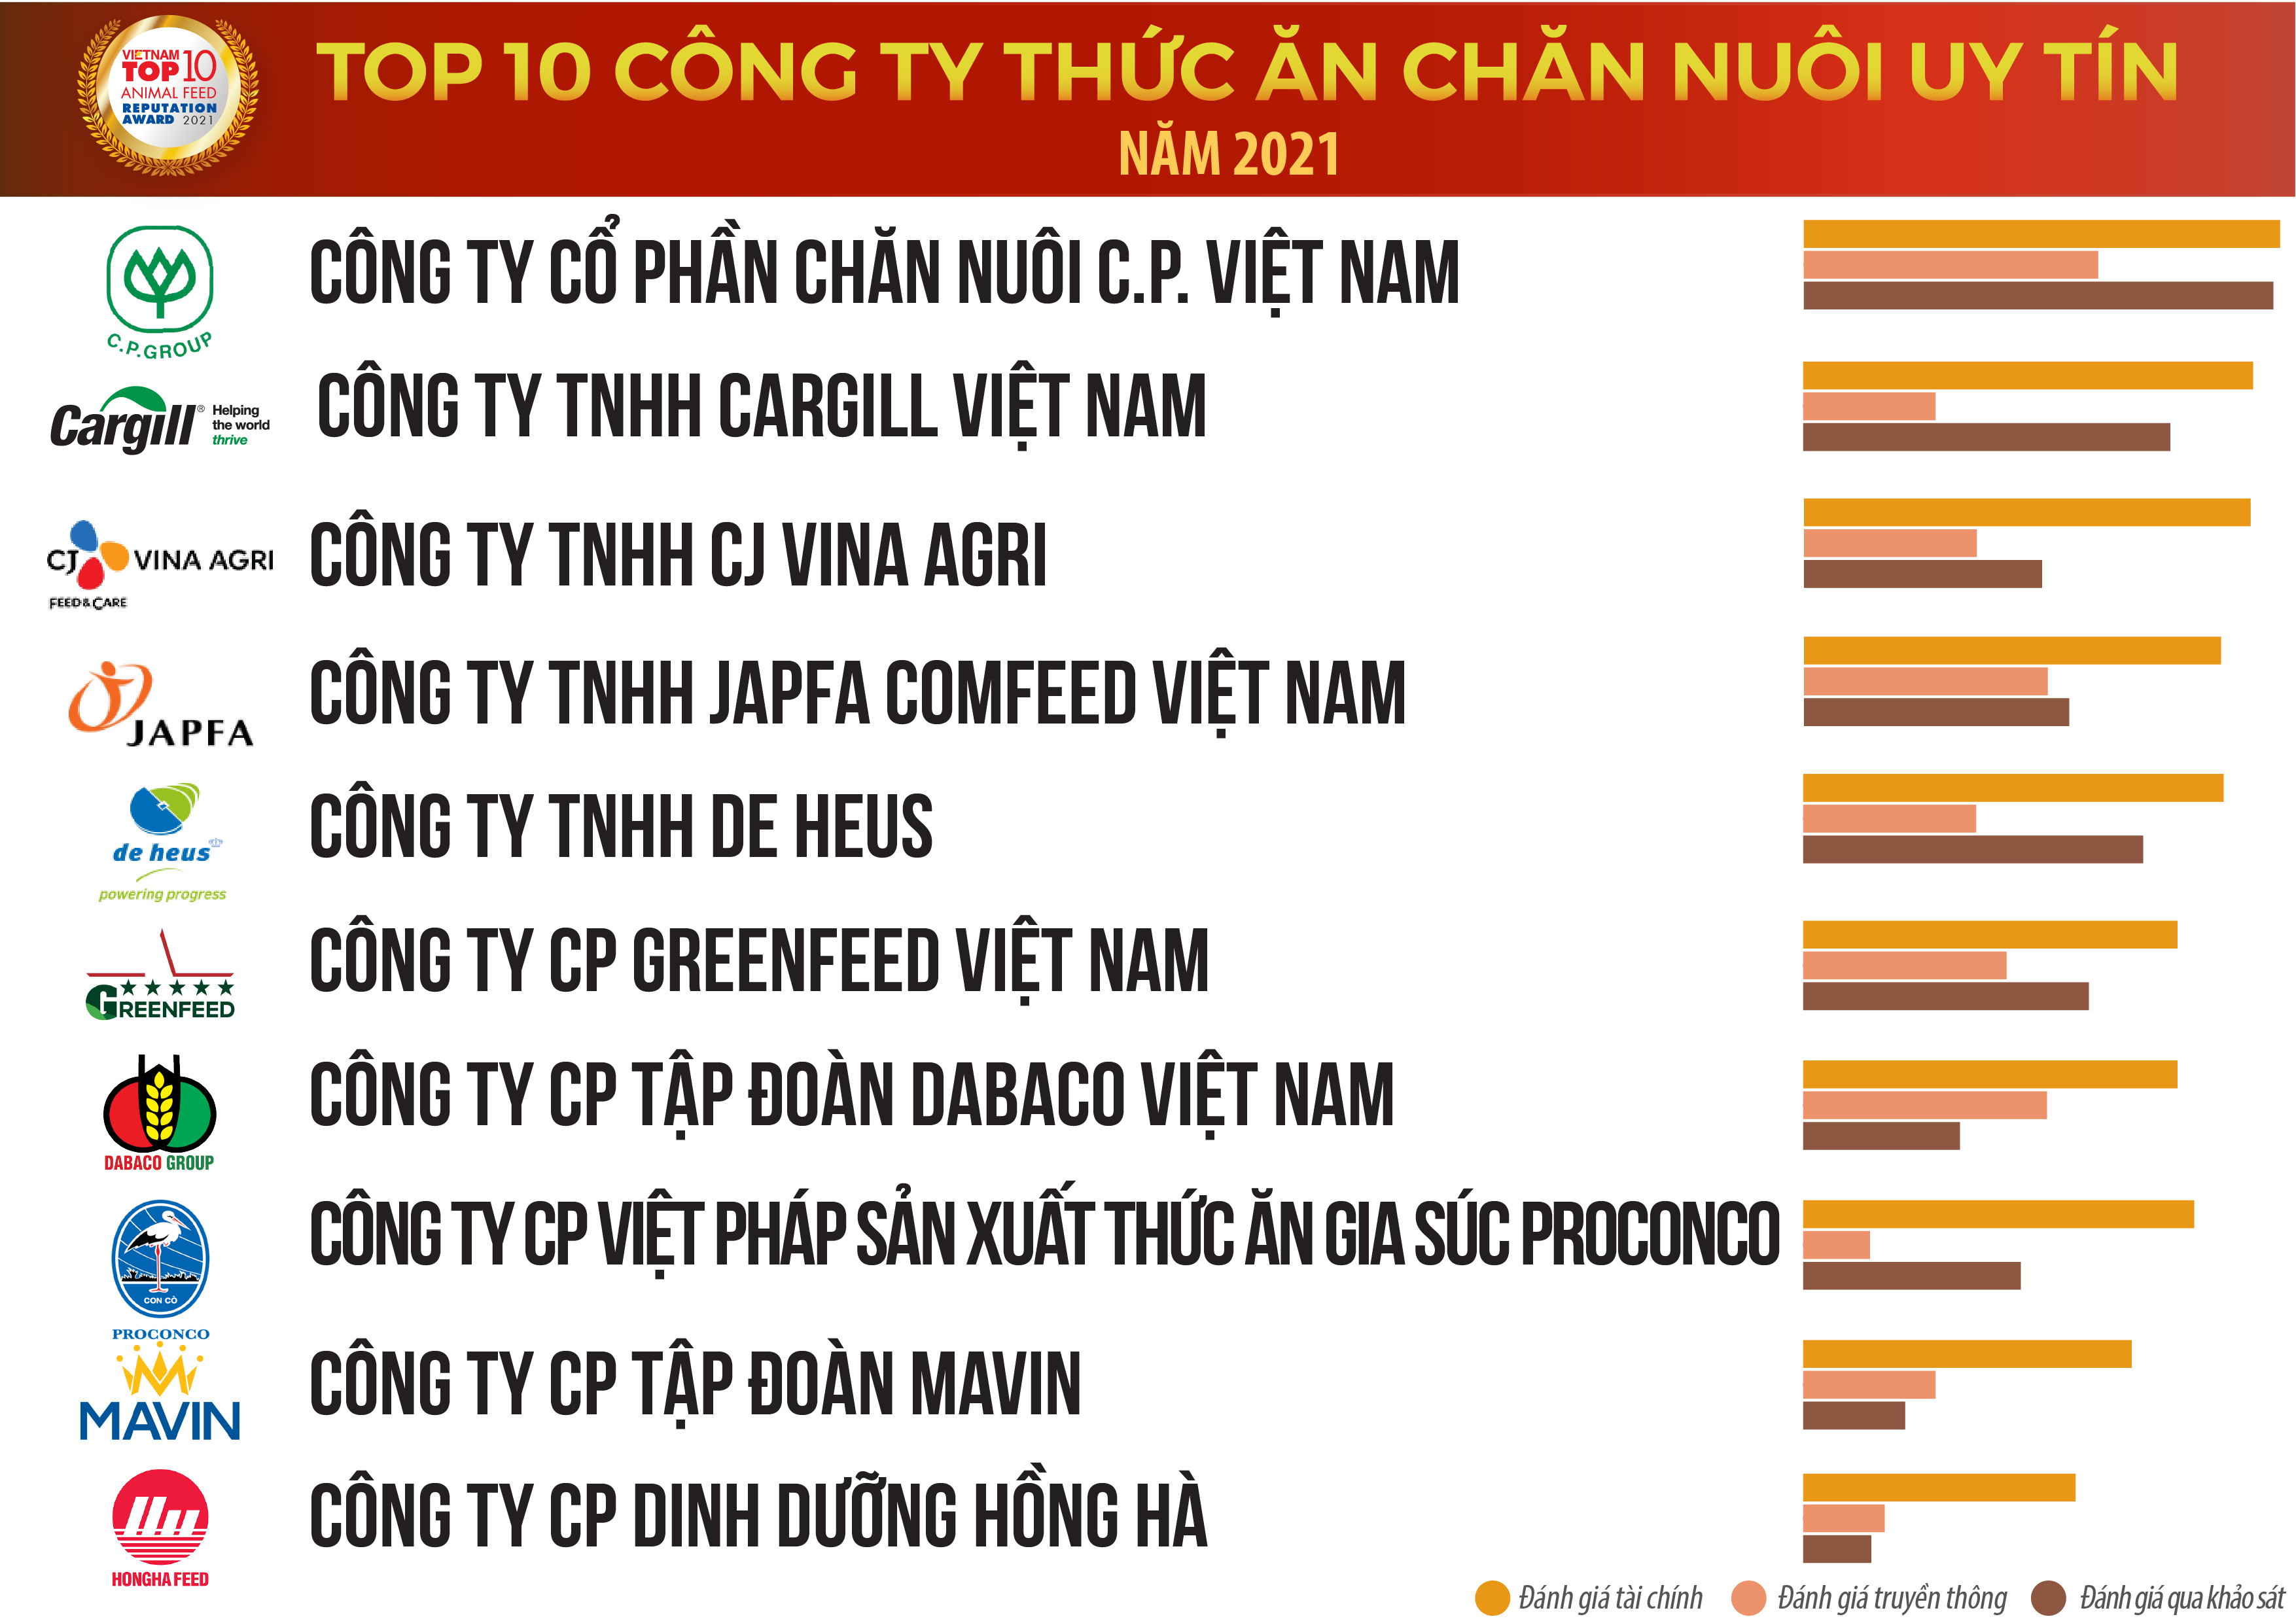 Vietnam Report, Top 10 Công ty Thức ăn chăn nuôi uy tín năm 2021, tháng 12/2021